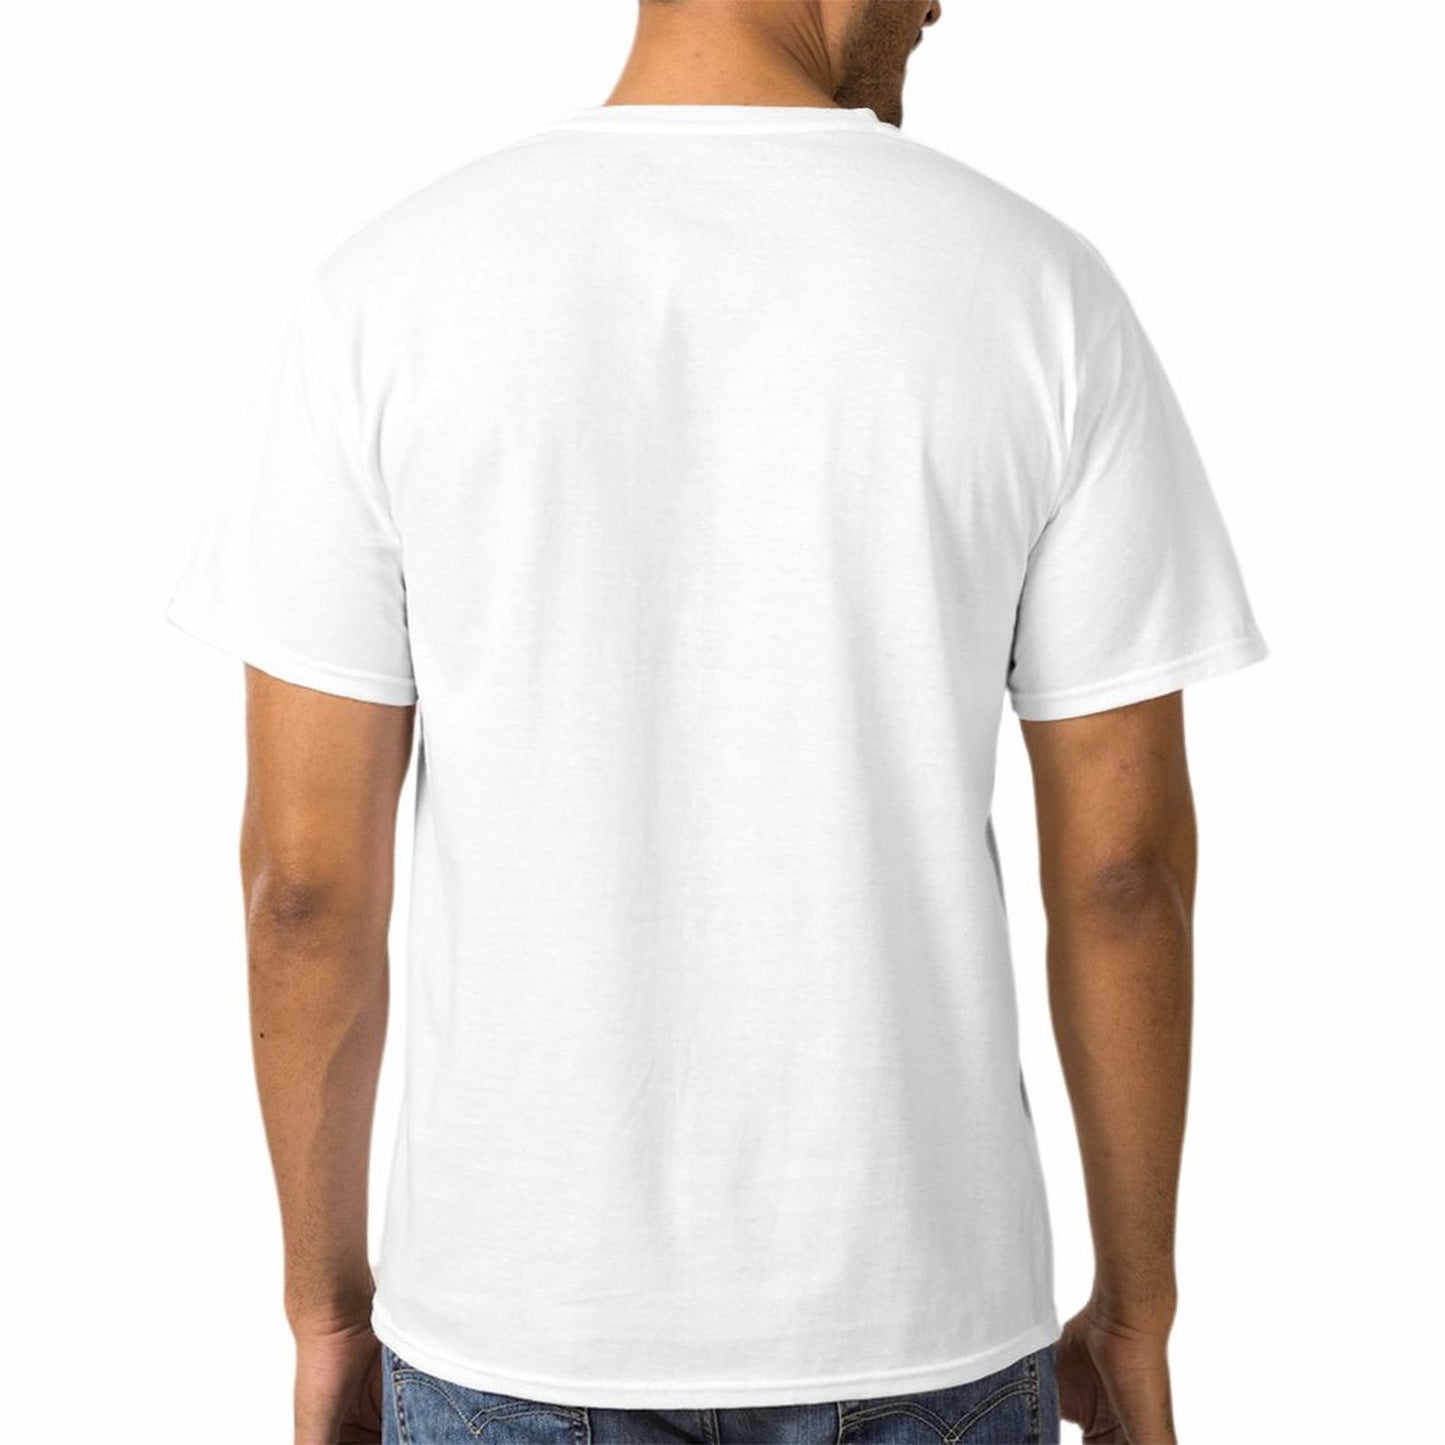 Online Custom T-shirt for Men Women Unisex Short-sleeve Shirt Printed O